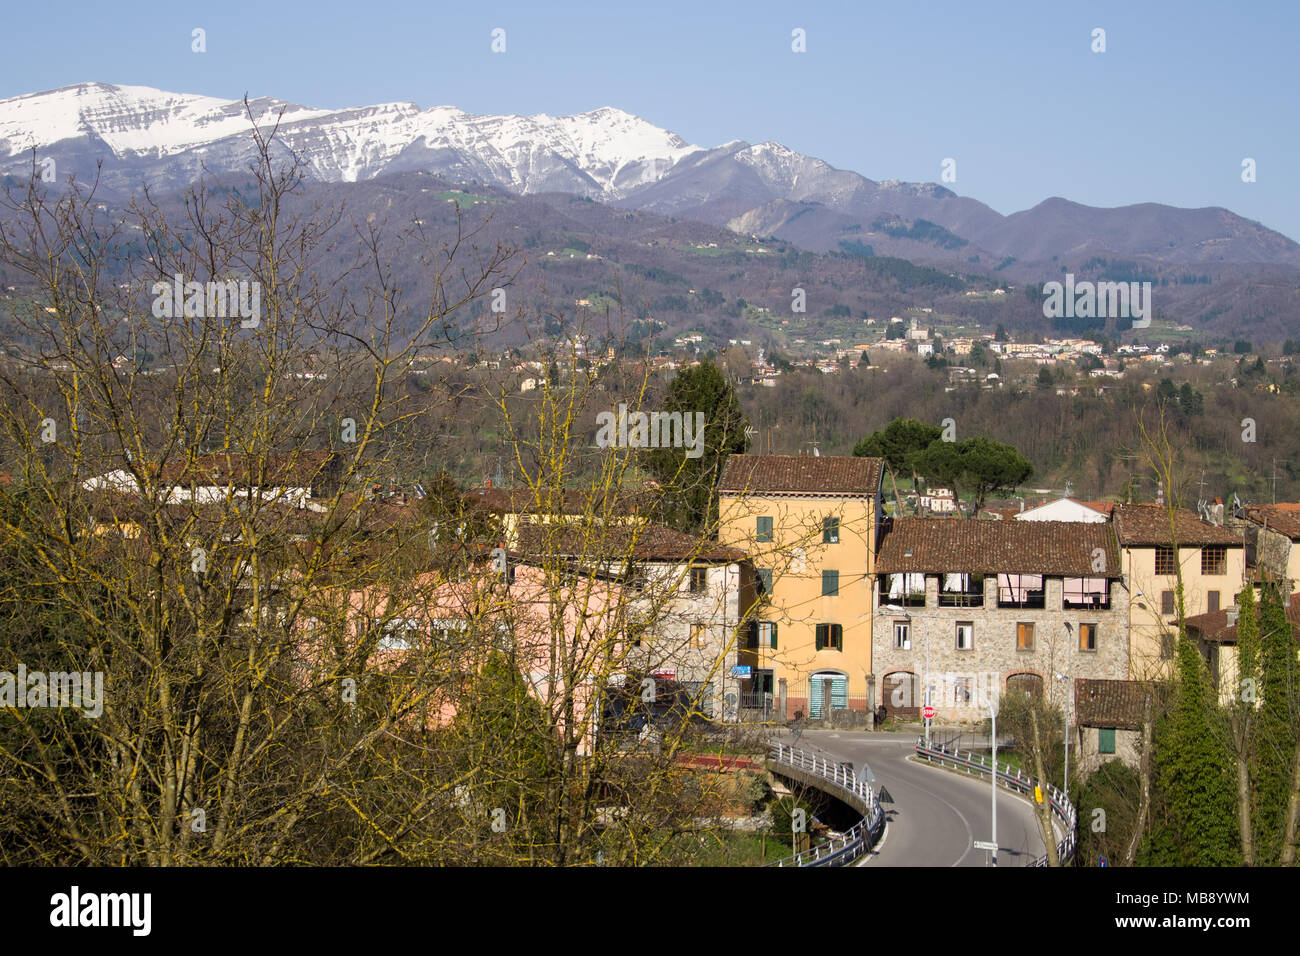 Garfagnana vista da sopra il Ponte di Campia village. Splendida zona rurale dell'Italia. Alpi Apuane in distanza. Foto Stock